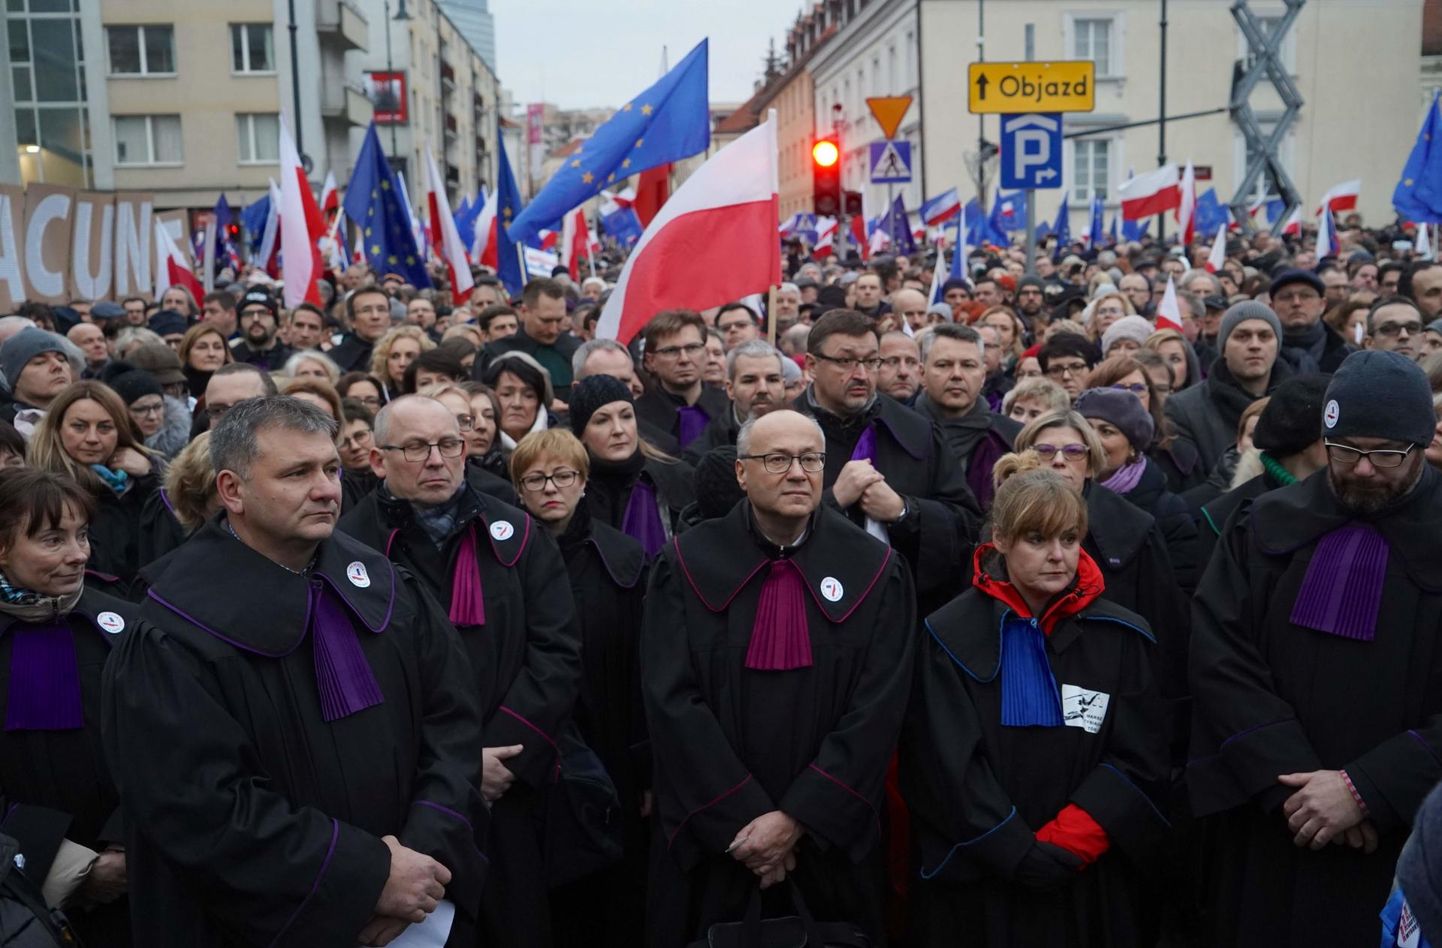 Poola kohtunikud ja juristid on korduvalt avaldanud meelt valitsuse justiitsreformi vastu, nii ka tänavu jaanuari keskel, kui tuldi tänavatele nii Poola kui ka Euroopa Liidu lippudega.